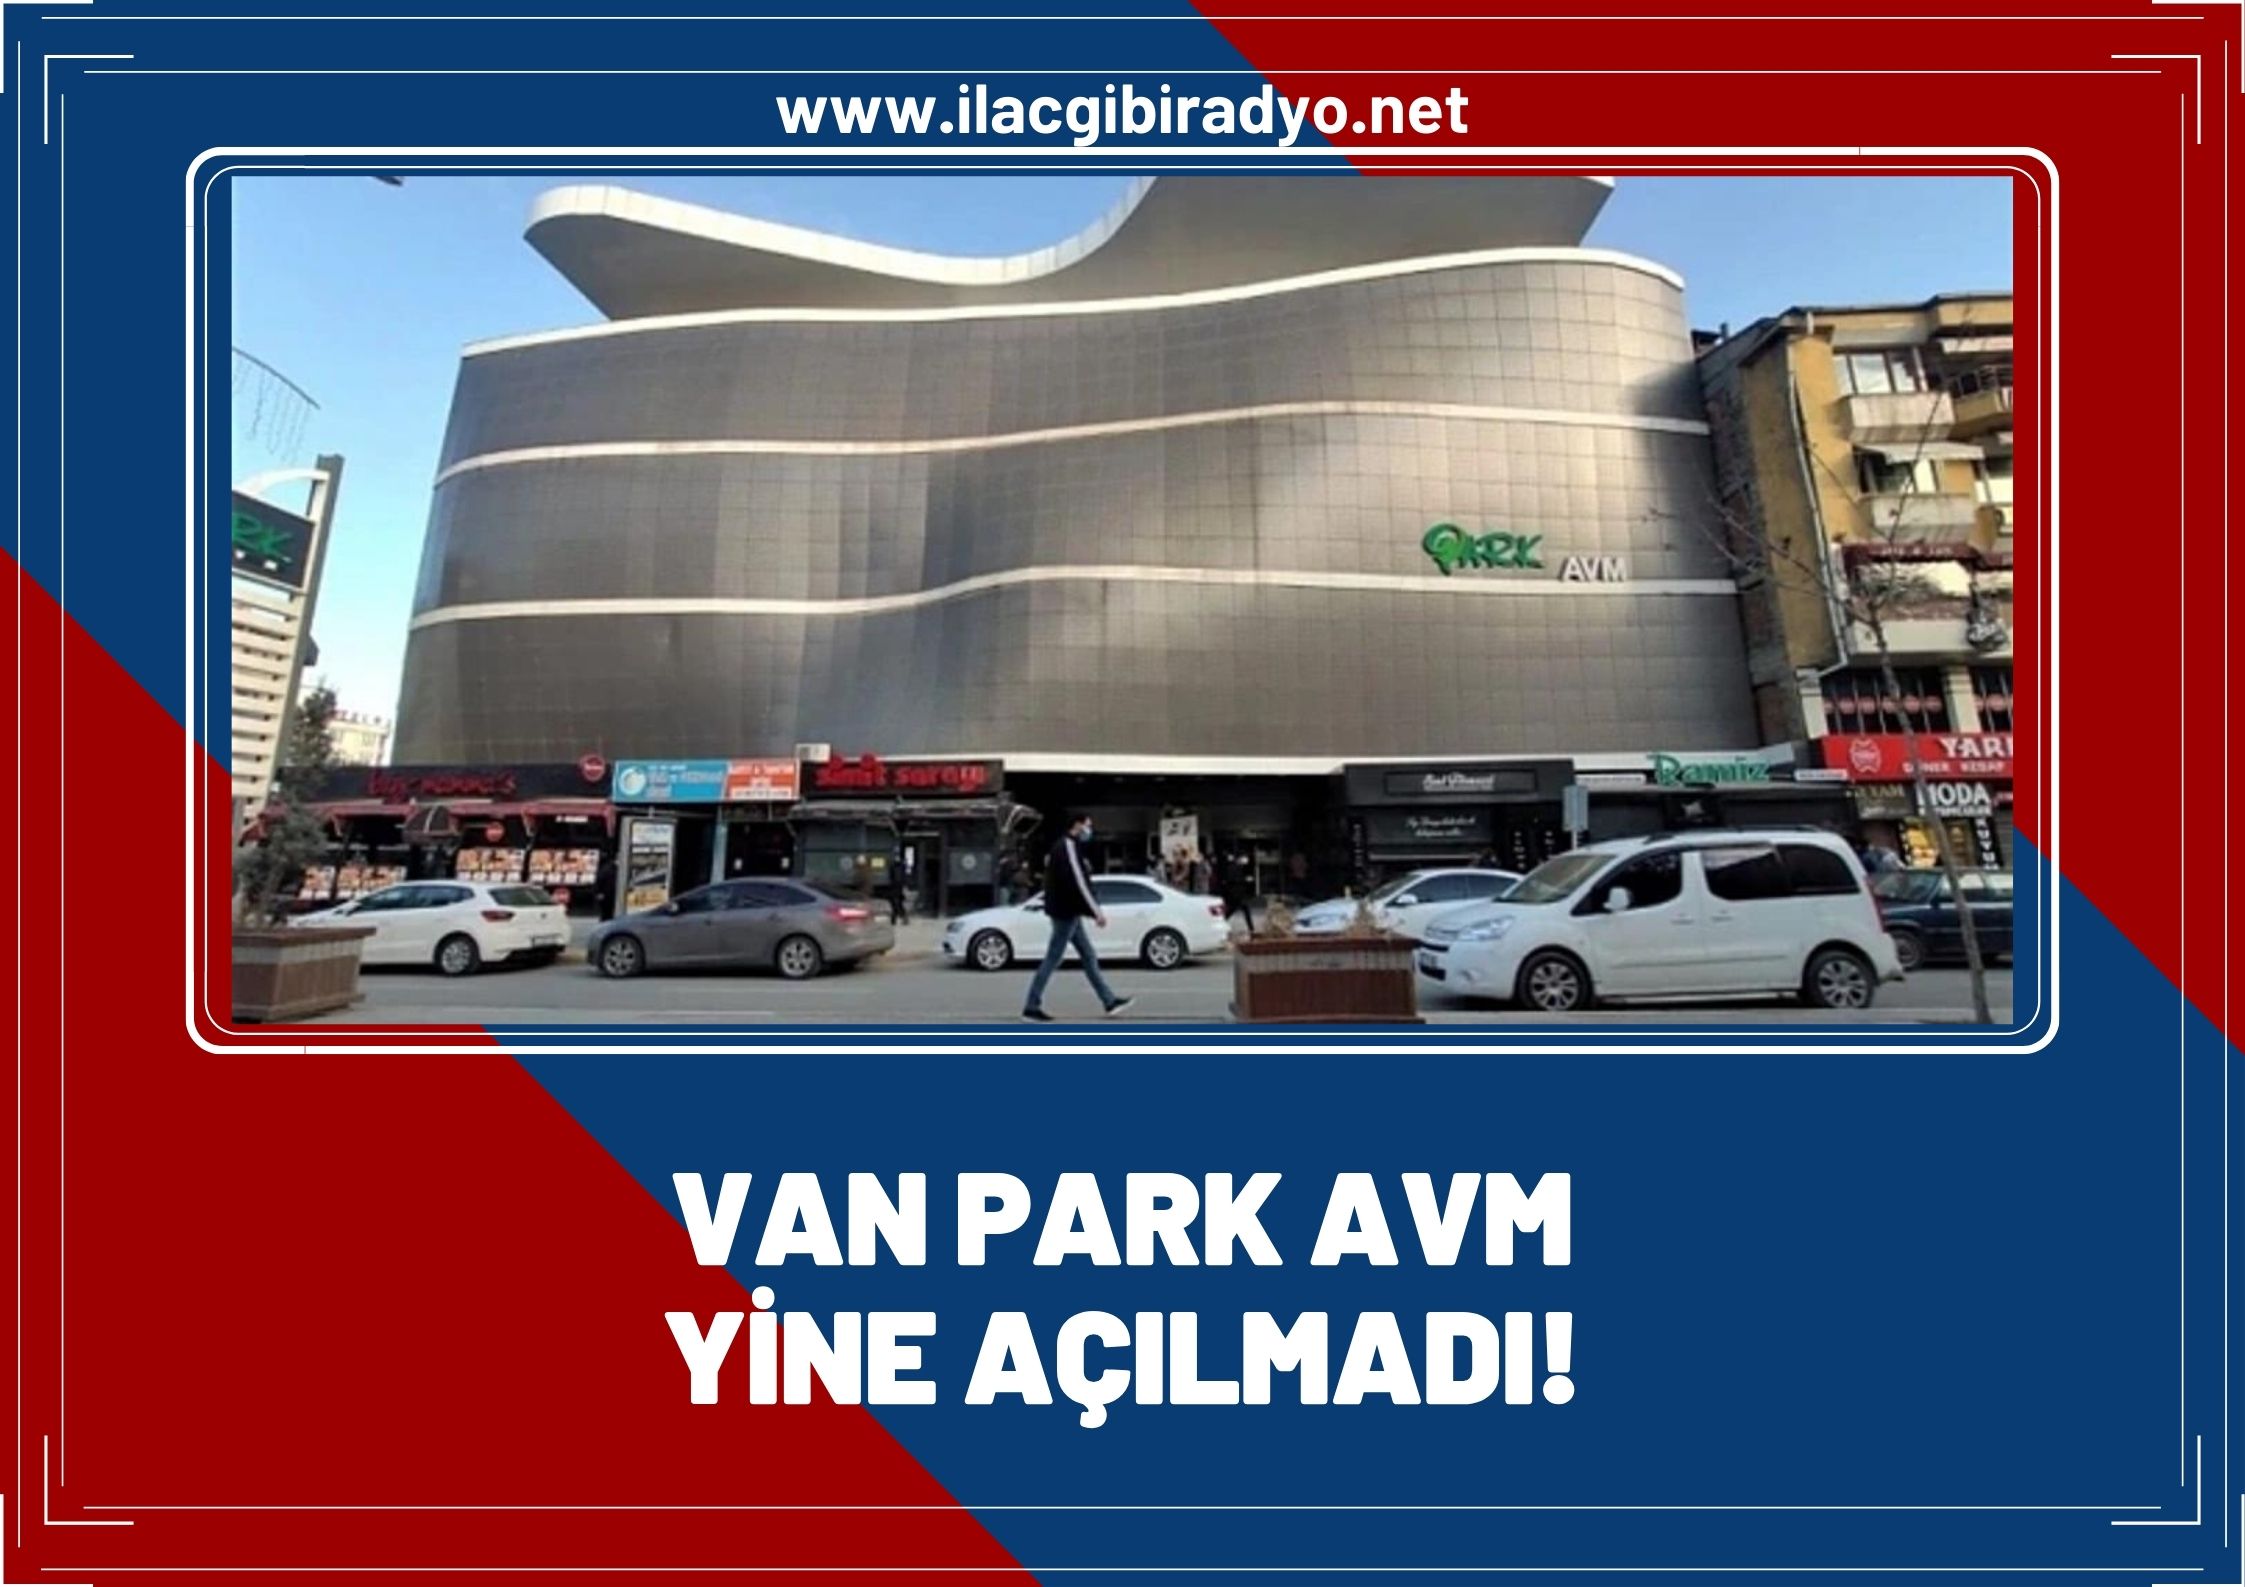 Van Park AVM’nin açılış tarihi yine değişti!